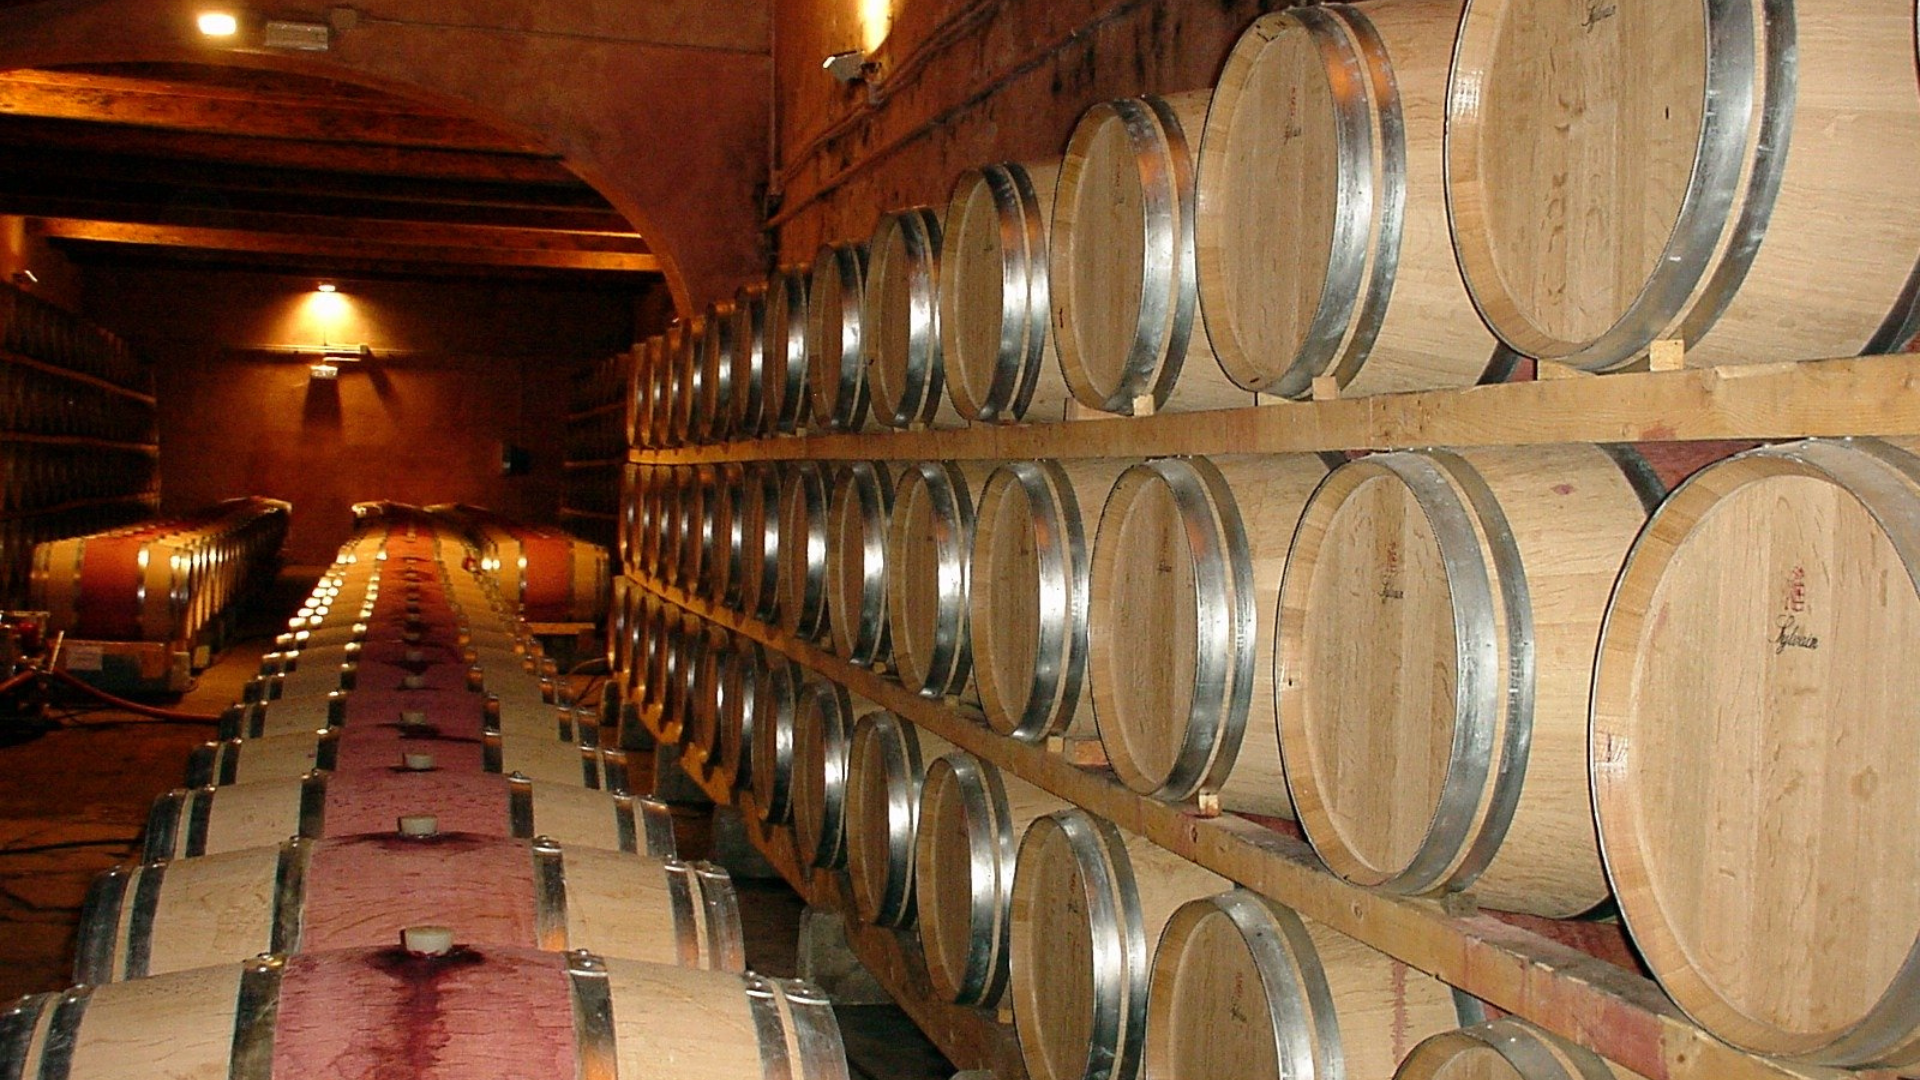 Buy Frescobaldi Wines Online from Great Wines Direct